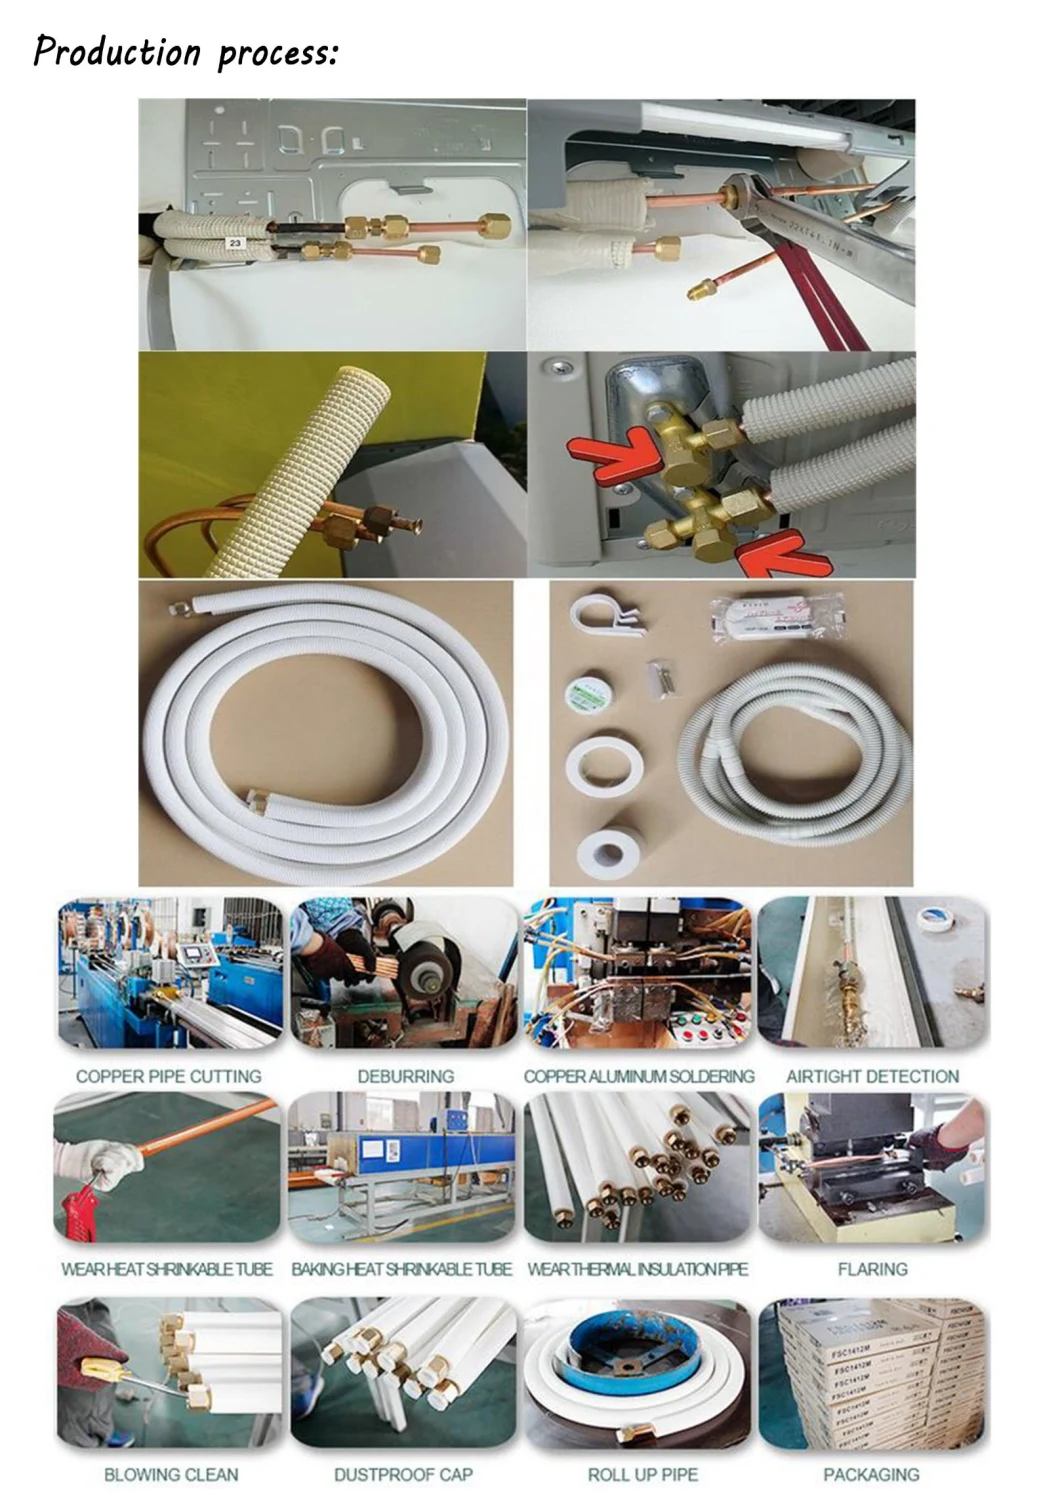 Insulation Copper Aluminium Tube for AC Connecting Pipe